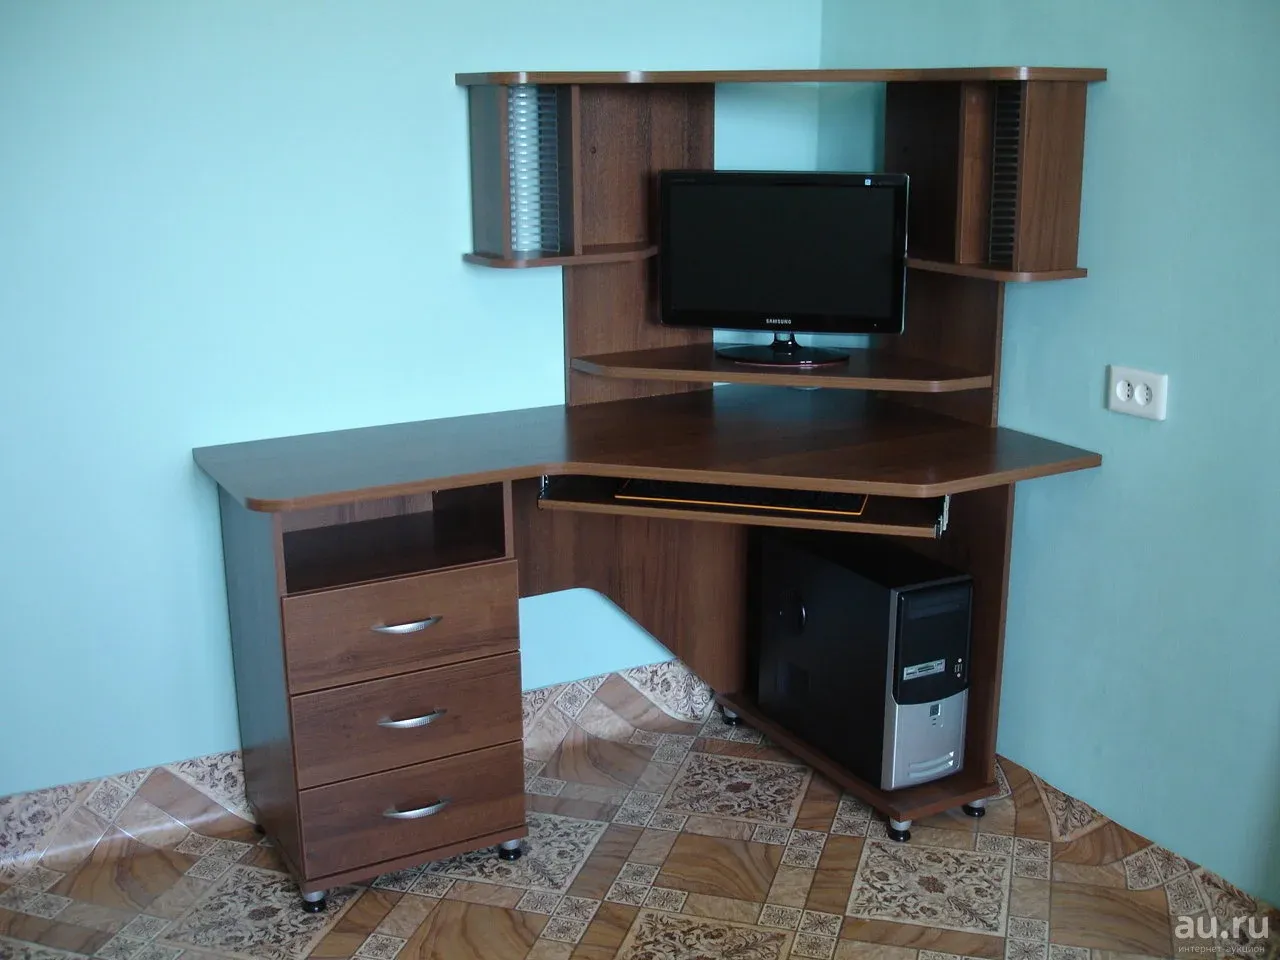 столы компьютерные бу в луганске